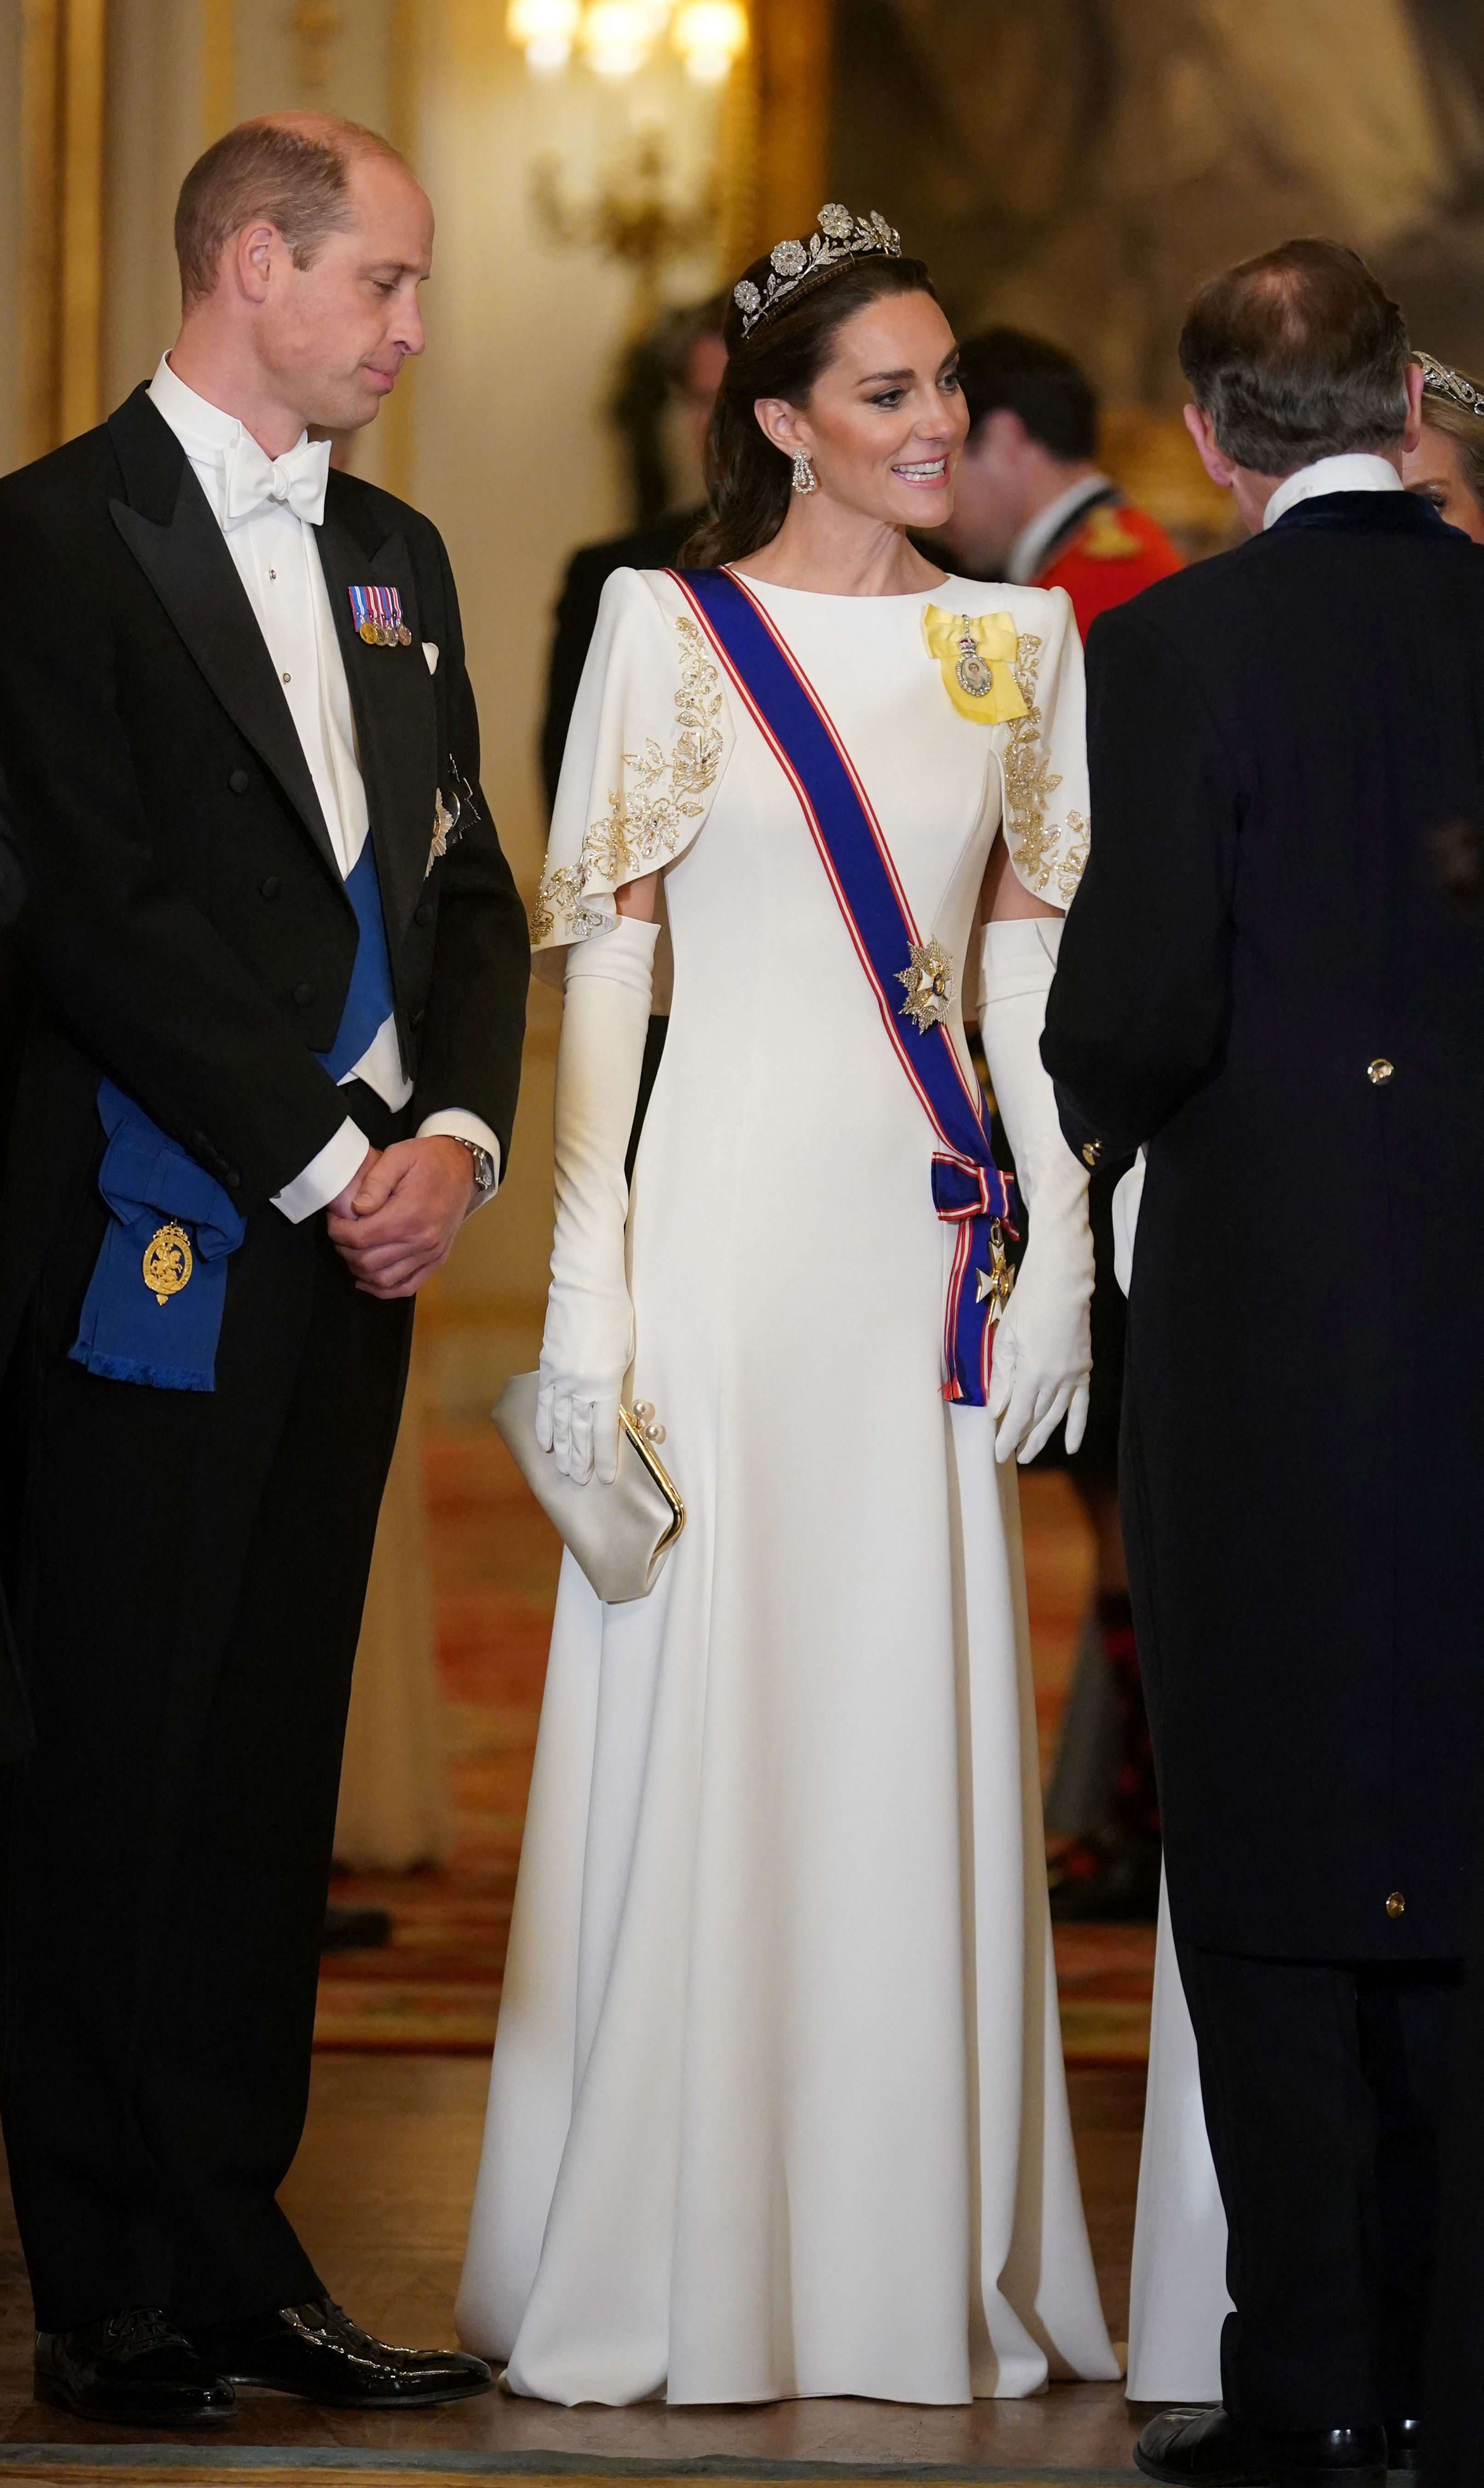 Kate Middleton Wears Strathmore Rose Tiara to State Banquet, Photos